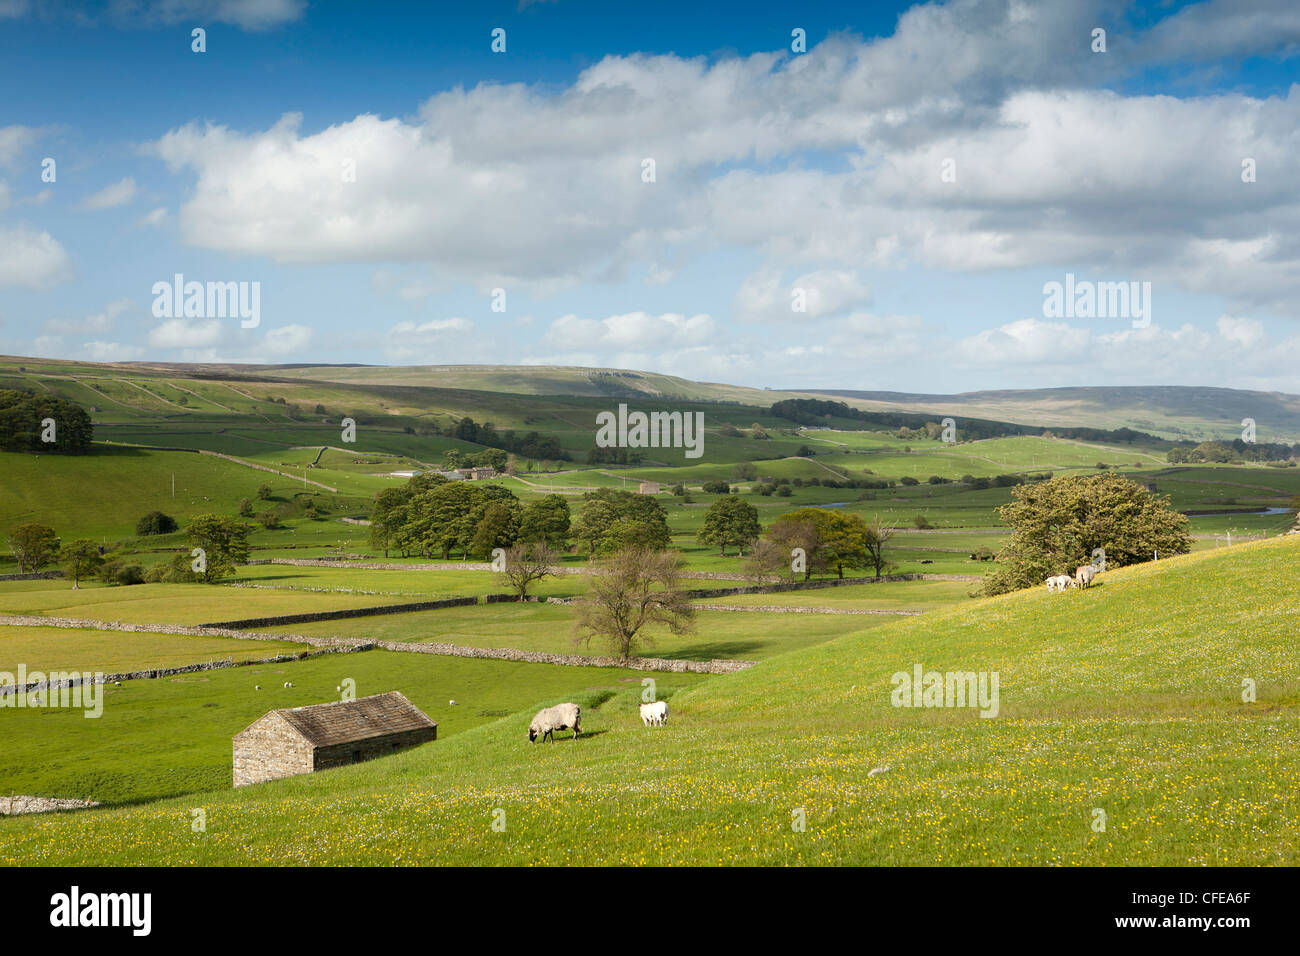 Royaume-uni, Angleterre, dans le Yorkshire, Wensleydale, de l'agriculture, des moutons paissant dans des terres agricoles dales Banque D'Images